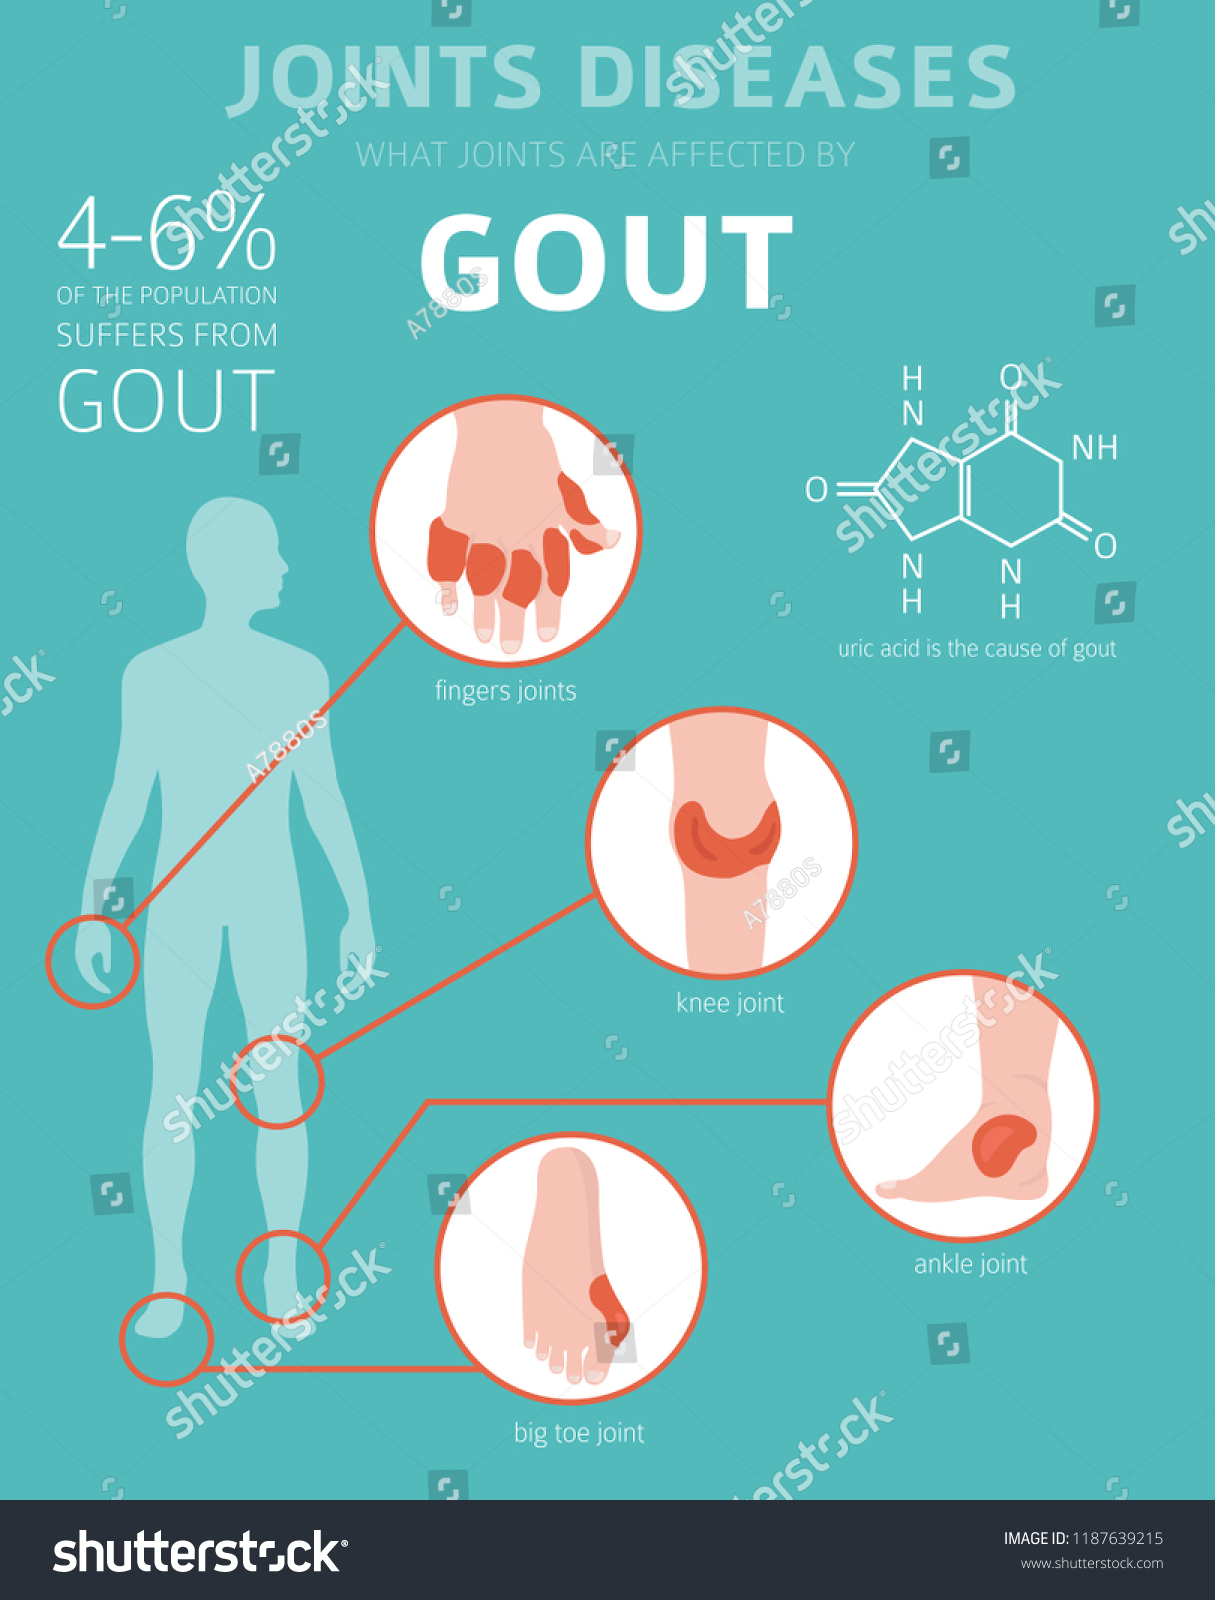 Symptoms gout 9 Pictures